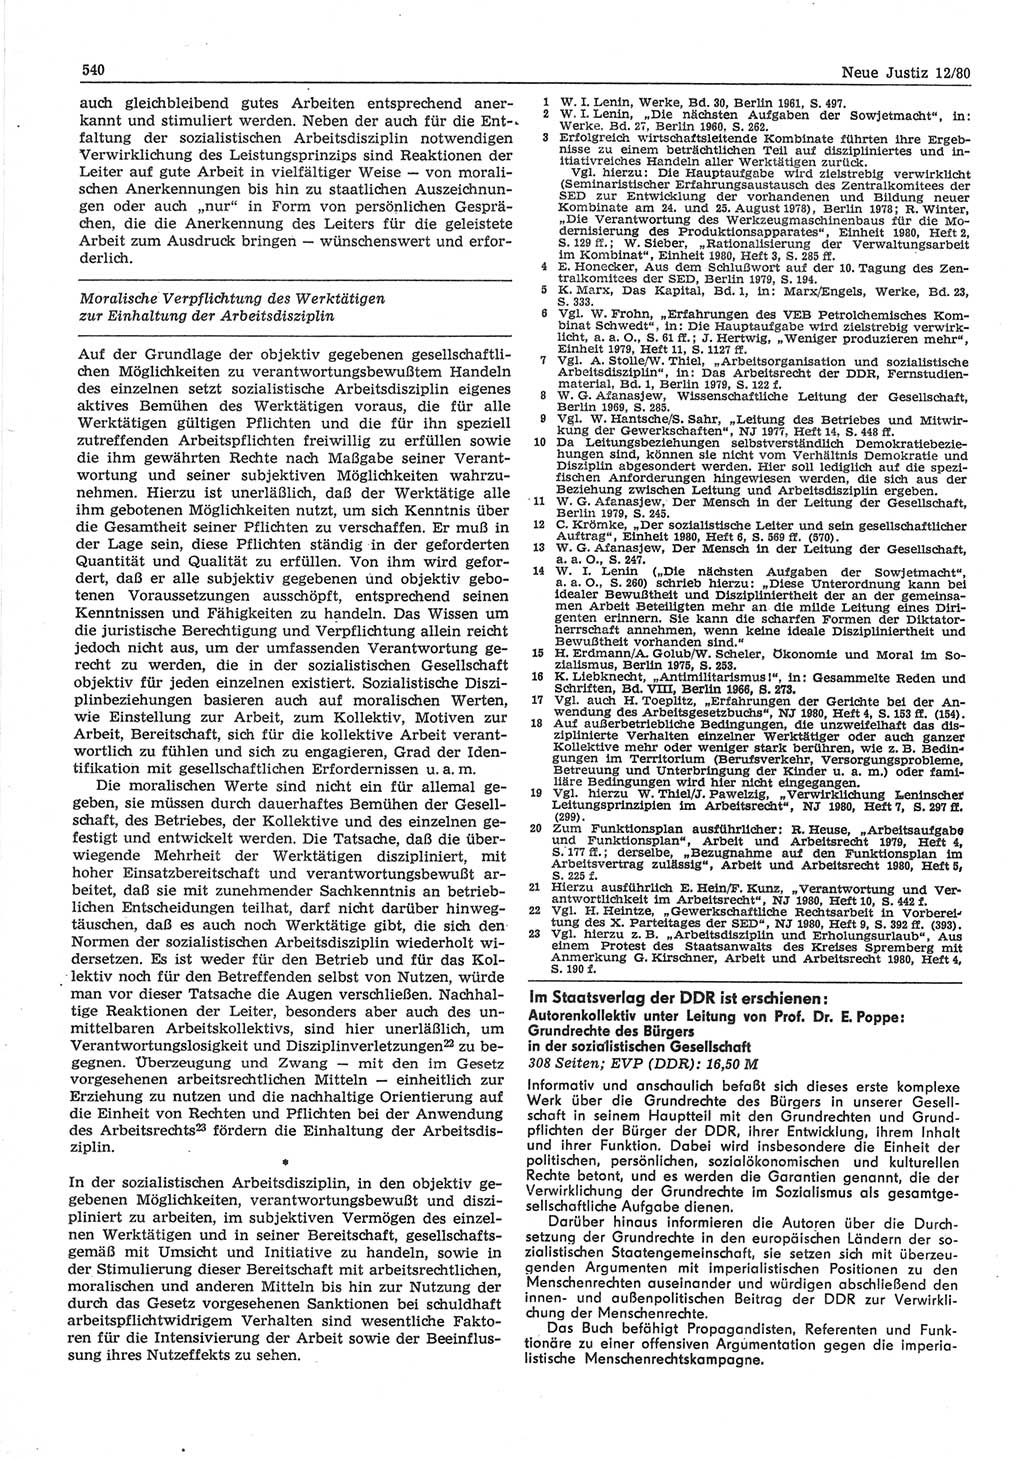 Neue Justiz (NJ), Zeitschrift für sozialistisches Recht und Gesetzlichkeit [Deutsche Demokratische Republik (DDR)], 34. Jahrgang 1980, Seite 540 (NJ DDR 1980, S. 540)